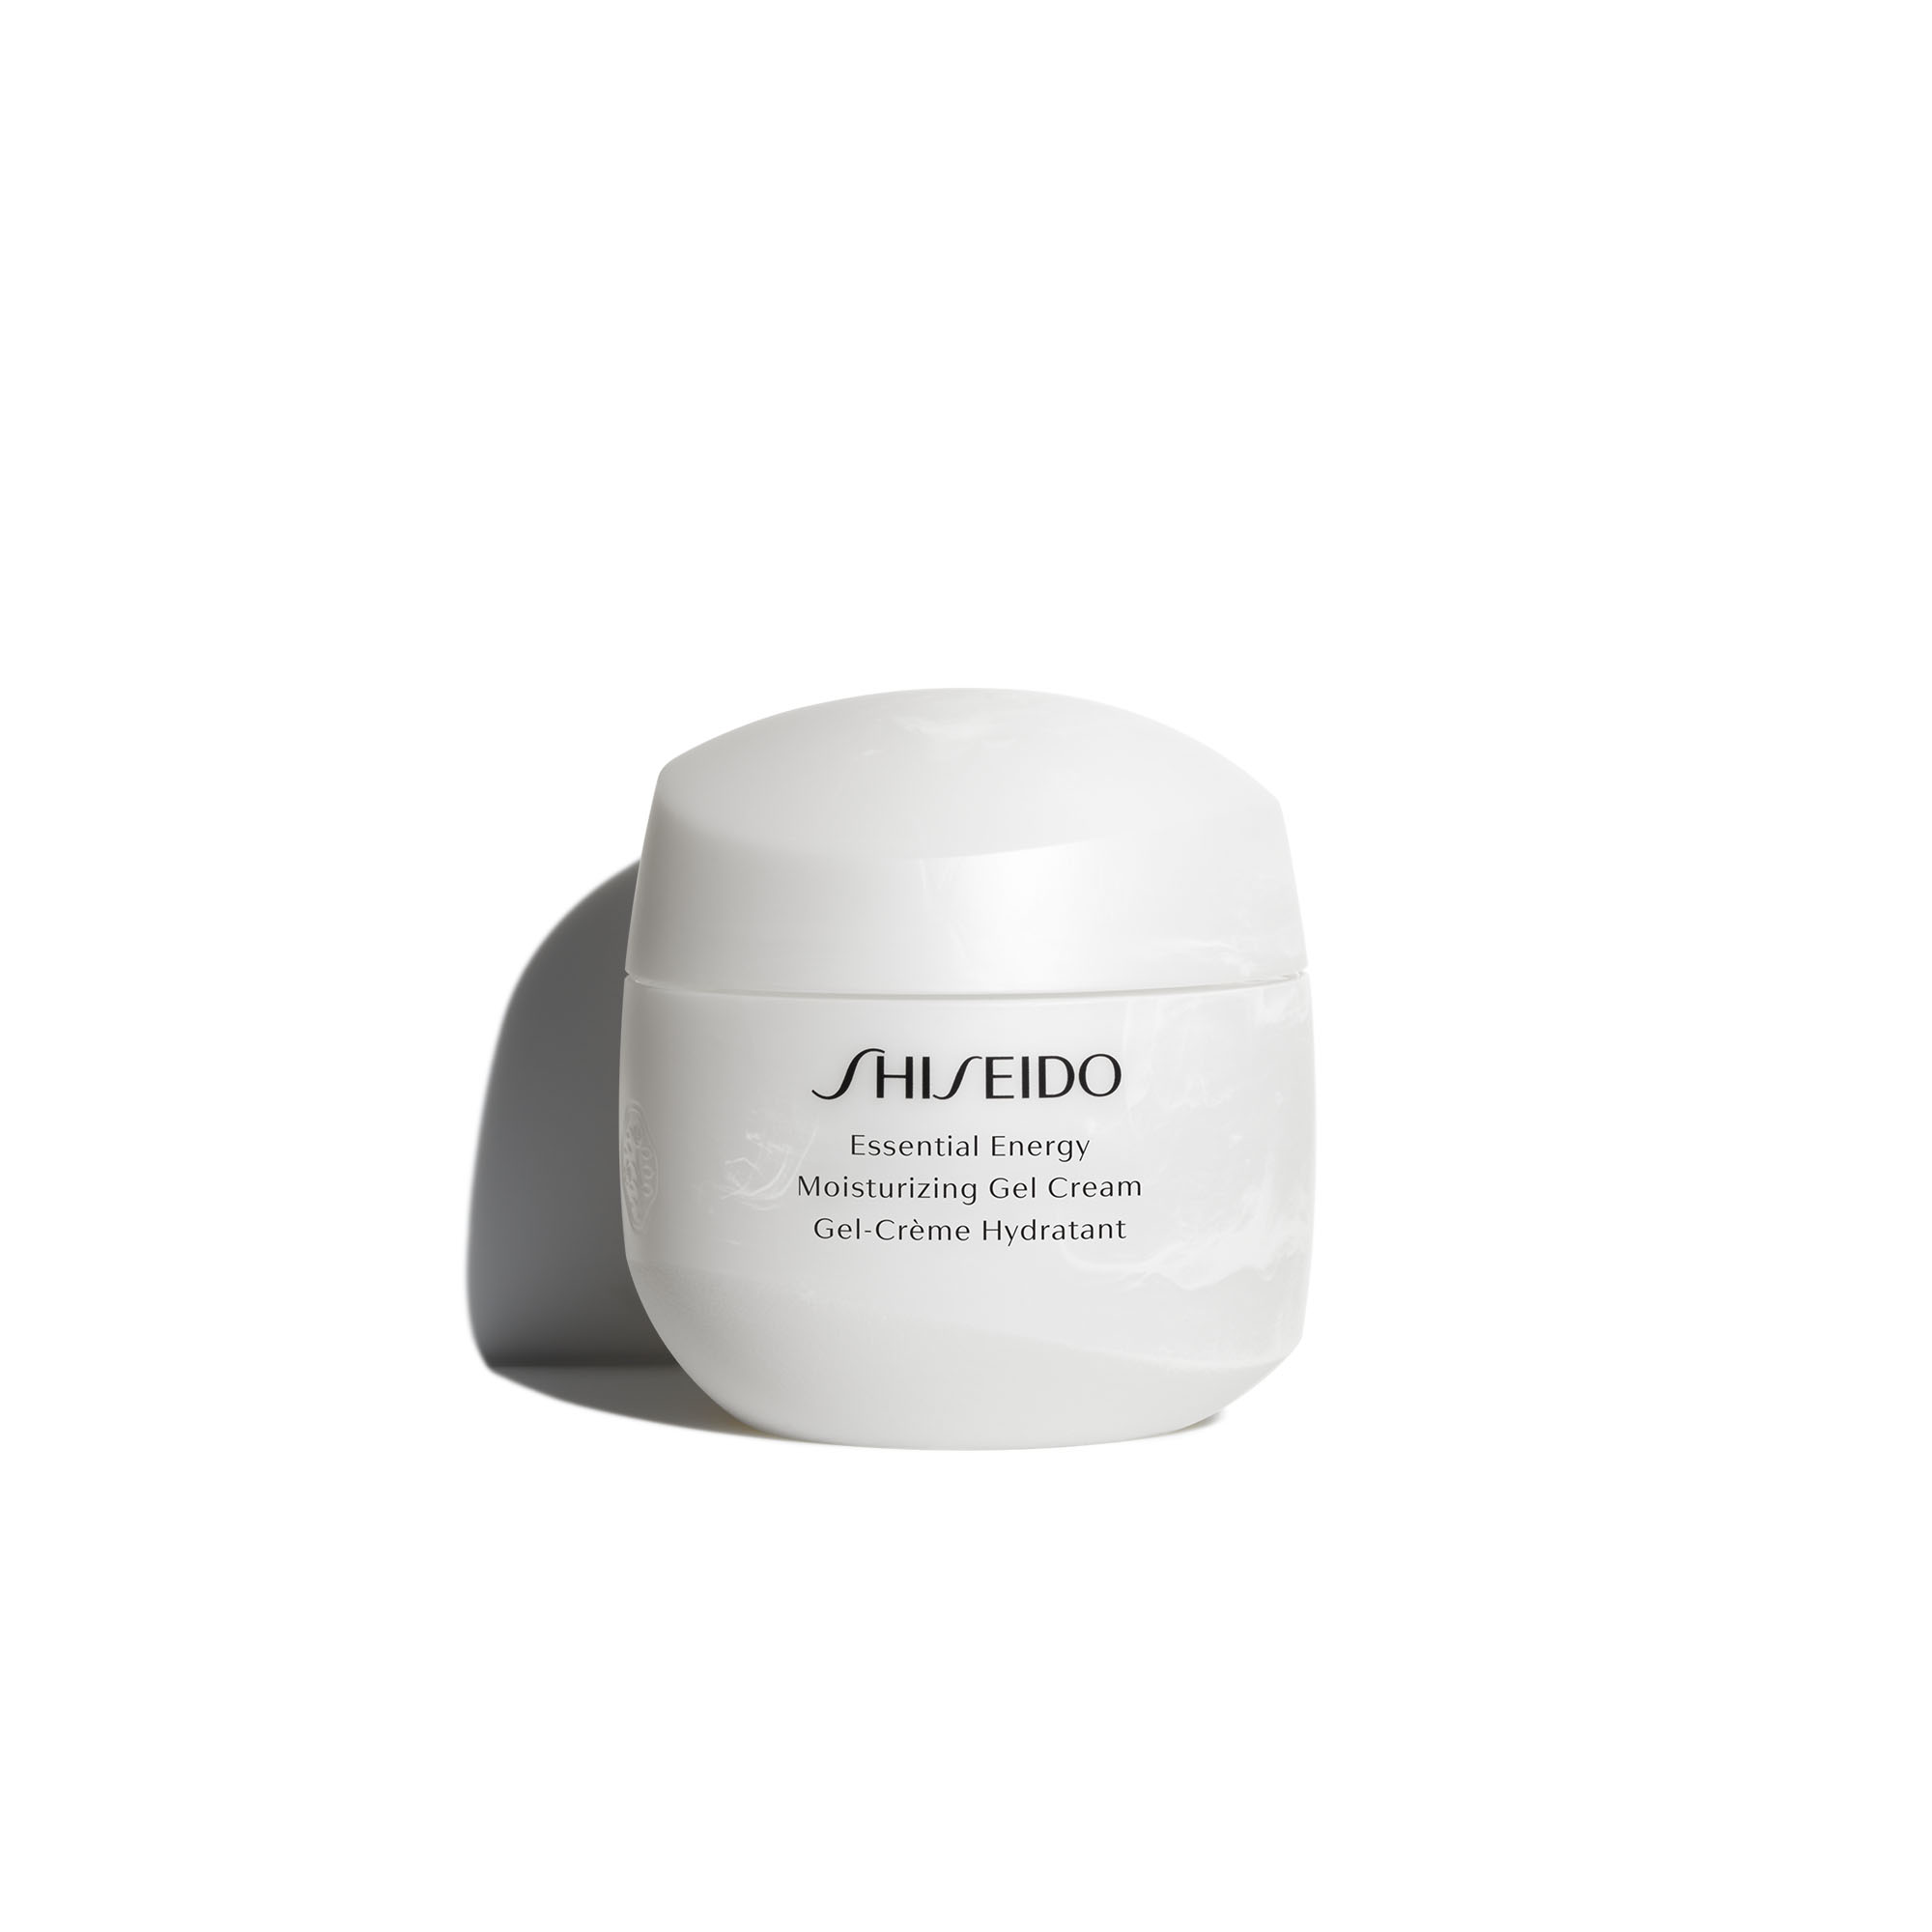 Shiseido energy. Крем Shiseido Essential Energy. Шисейдо Essential Energy Hydrating Cream. Shiseido Essential Energy Moisturizing Cream. Shiseido spf20 крем для лица.